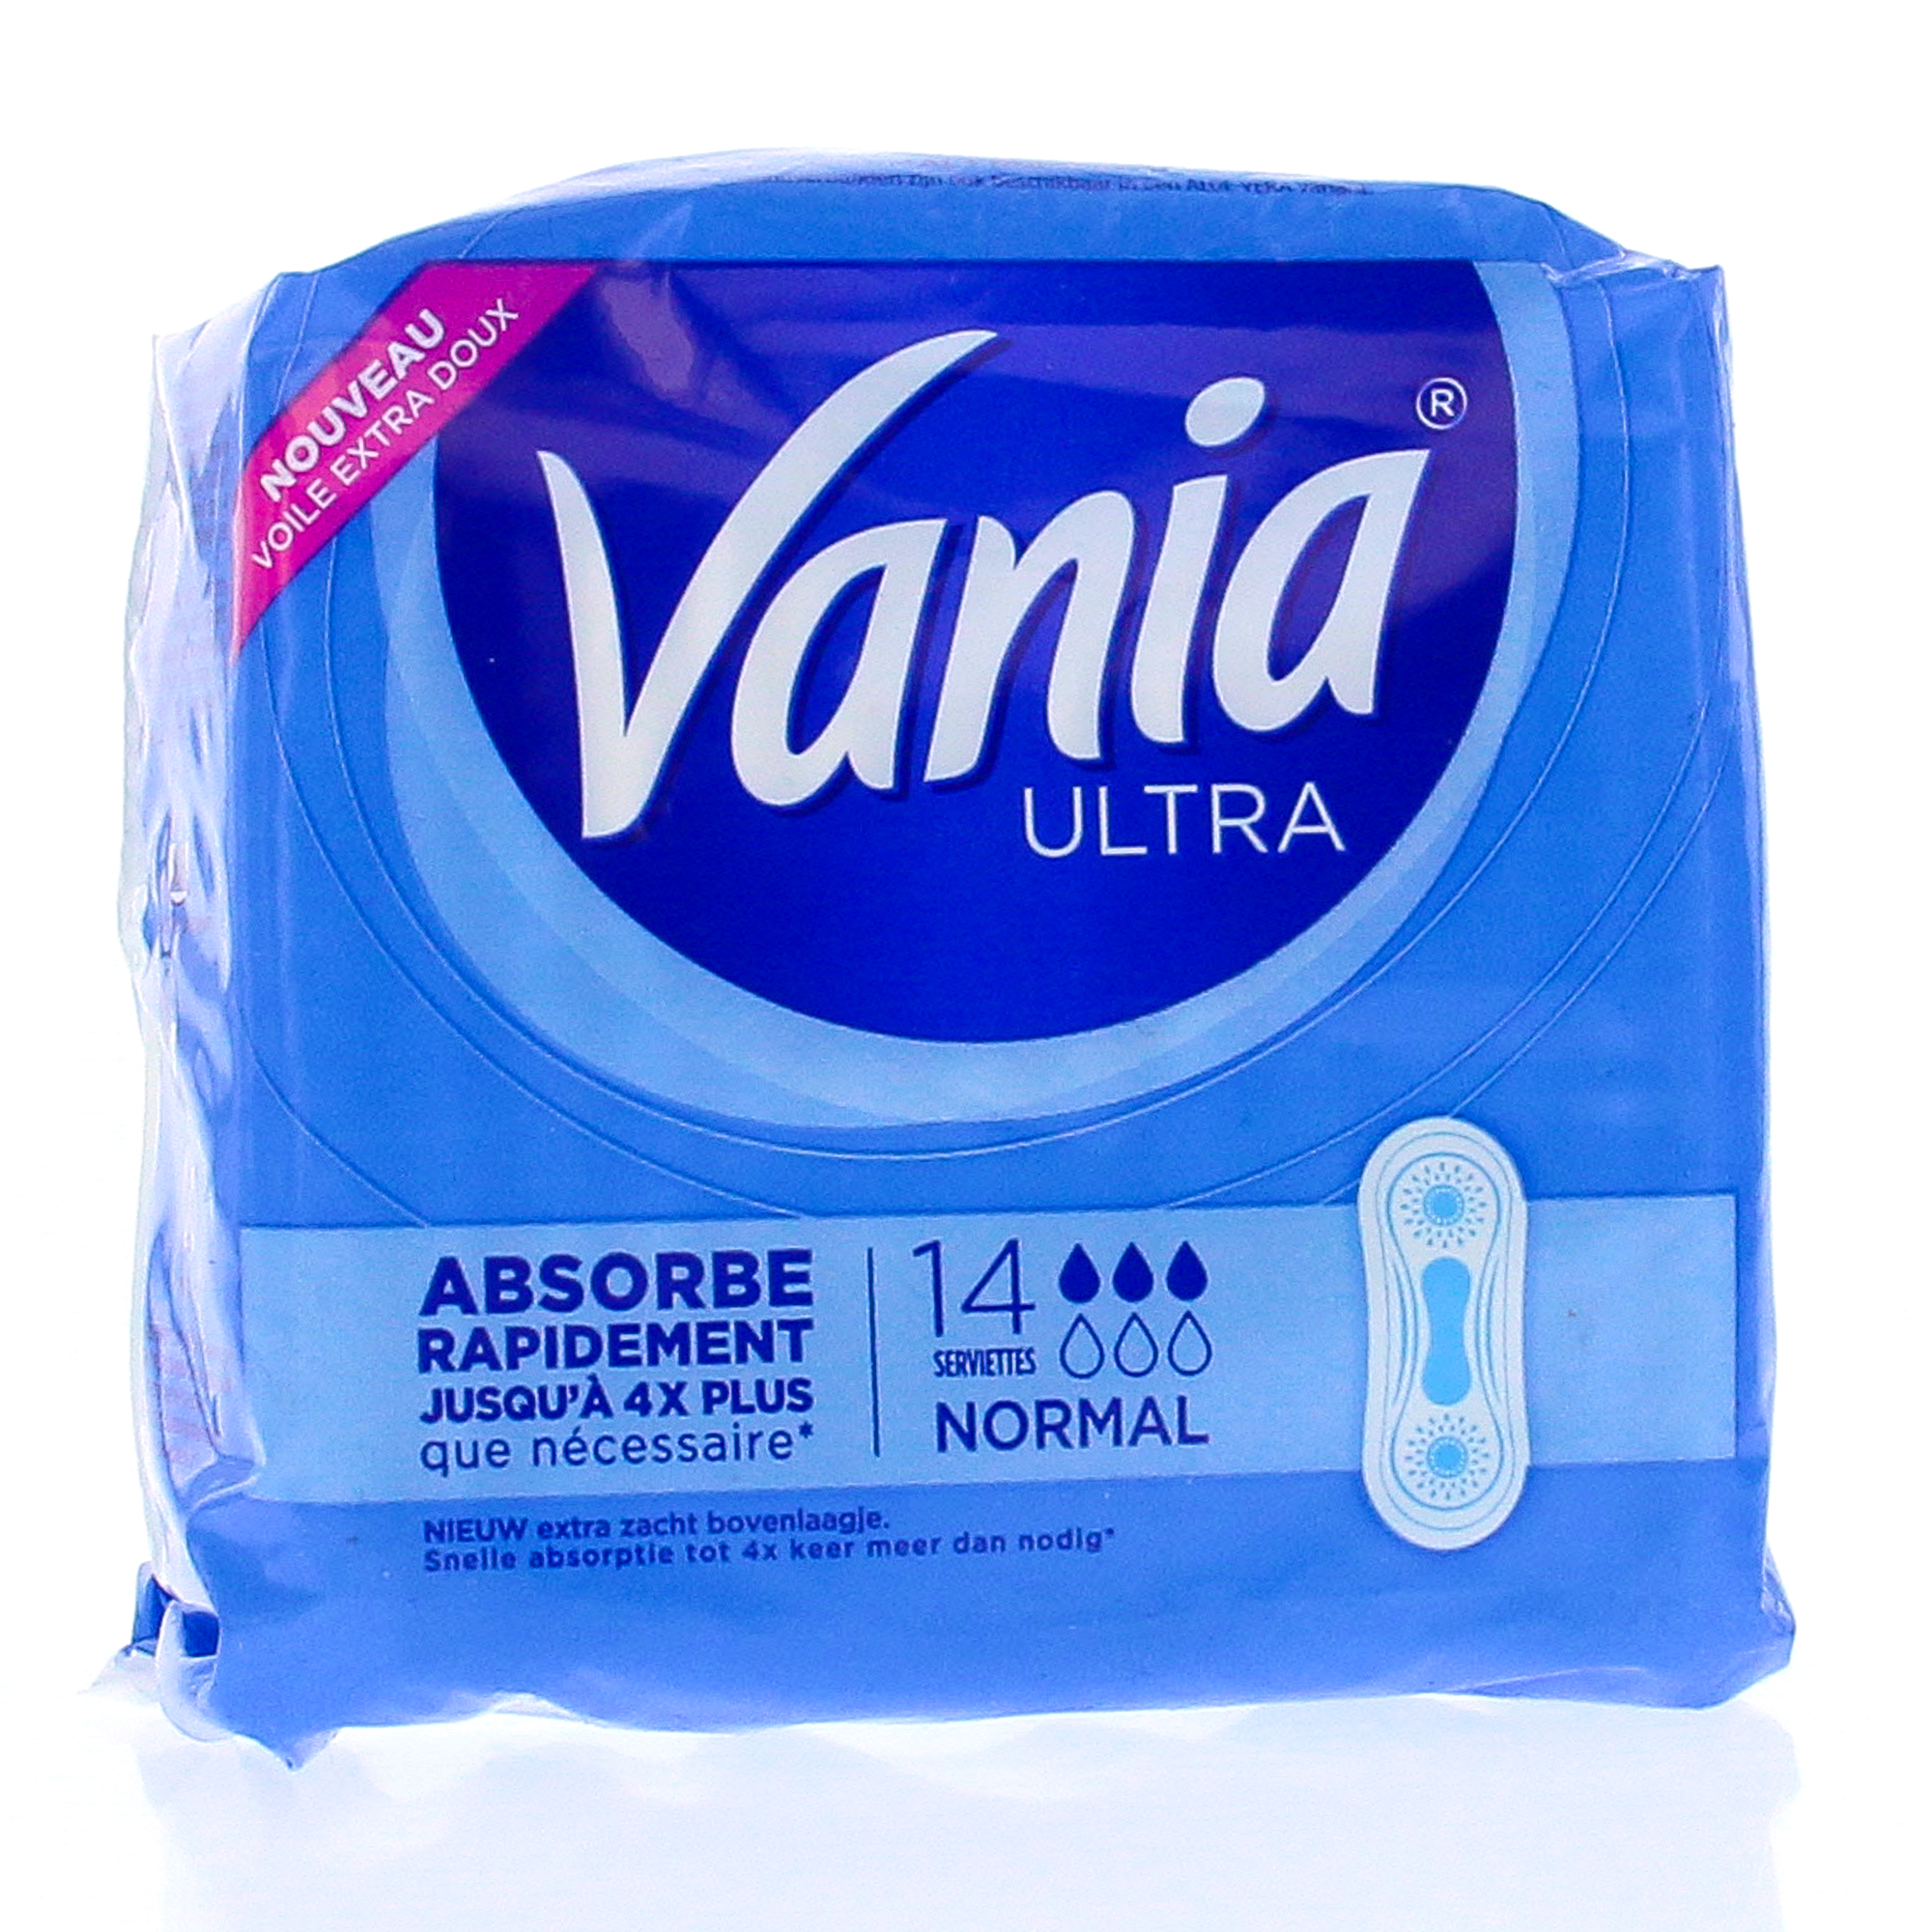 Vania Ultra Normal (paquet de 14 serviettes hygiéniques)